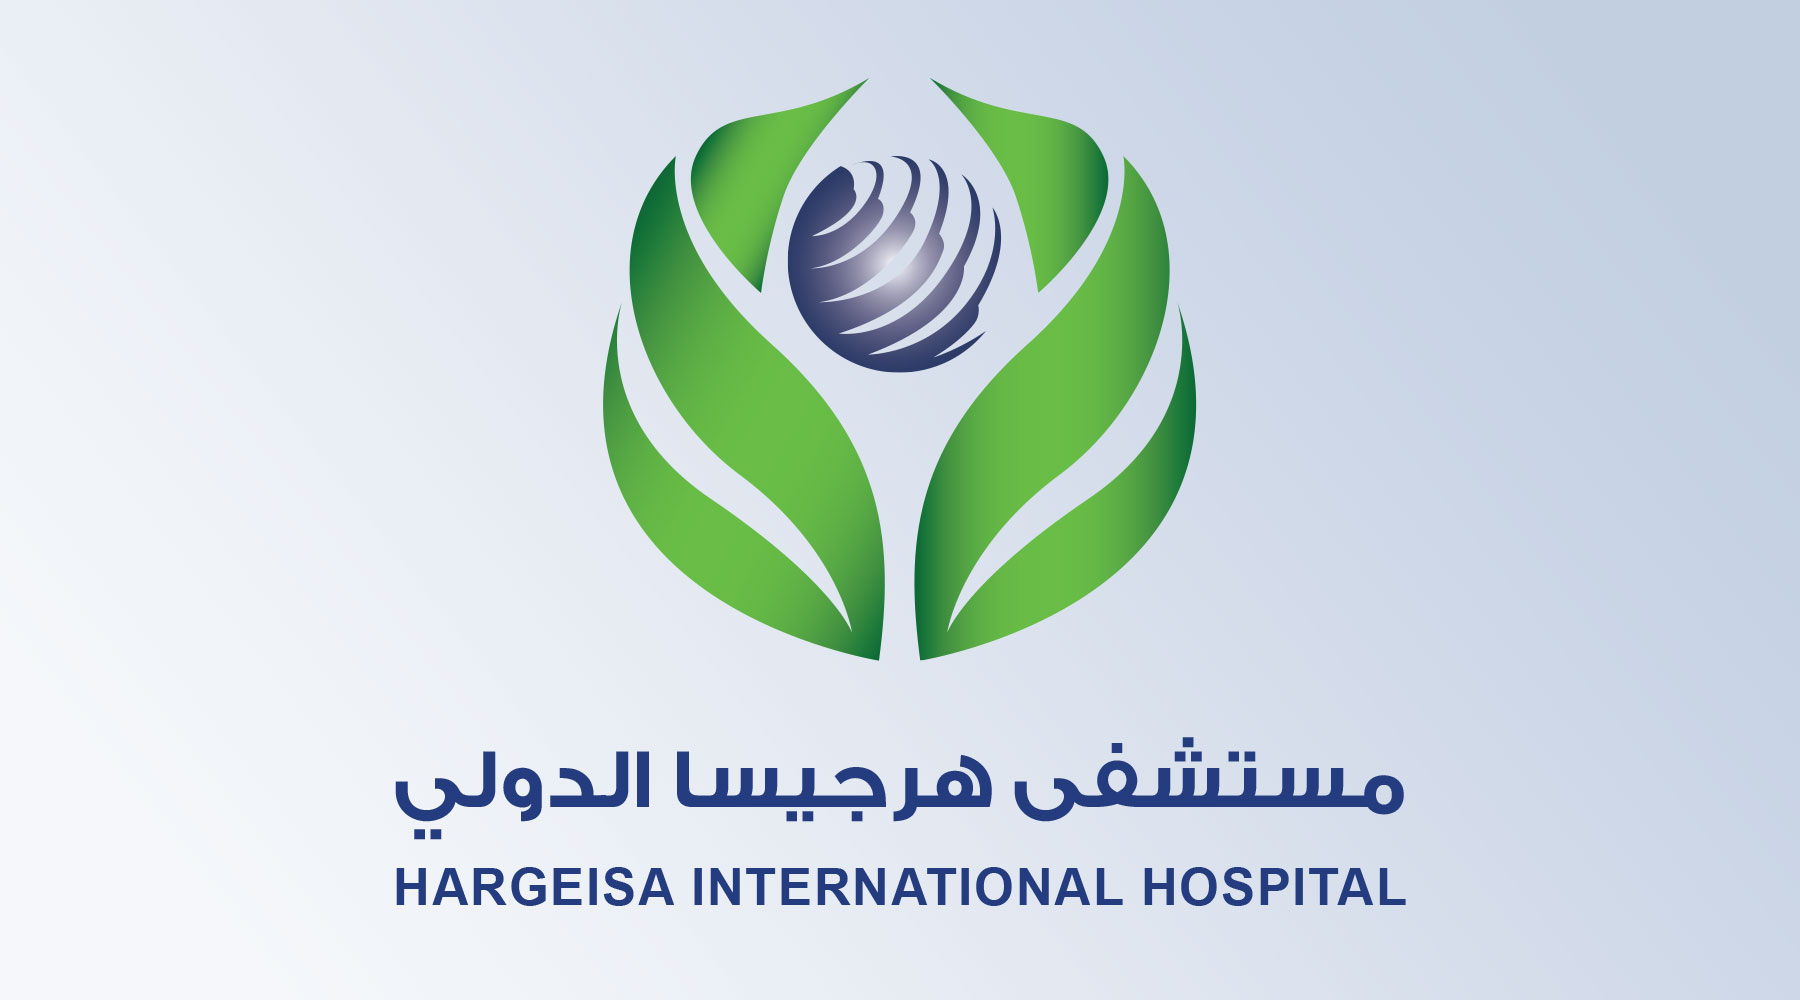 مستشفى هرجيسا الدولي